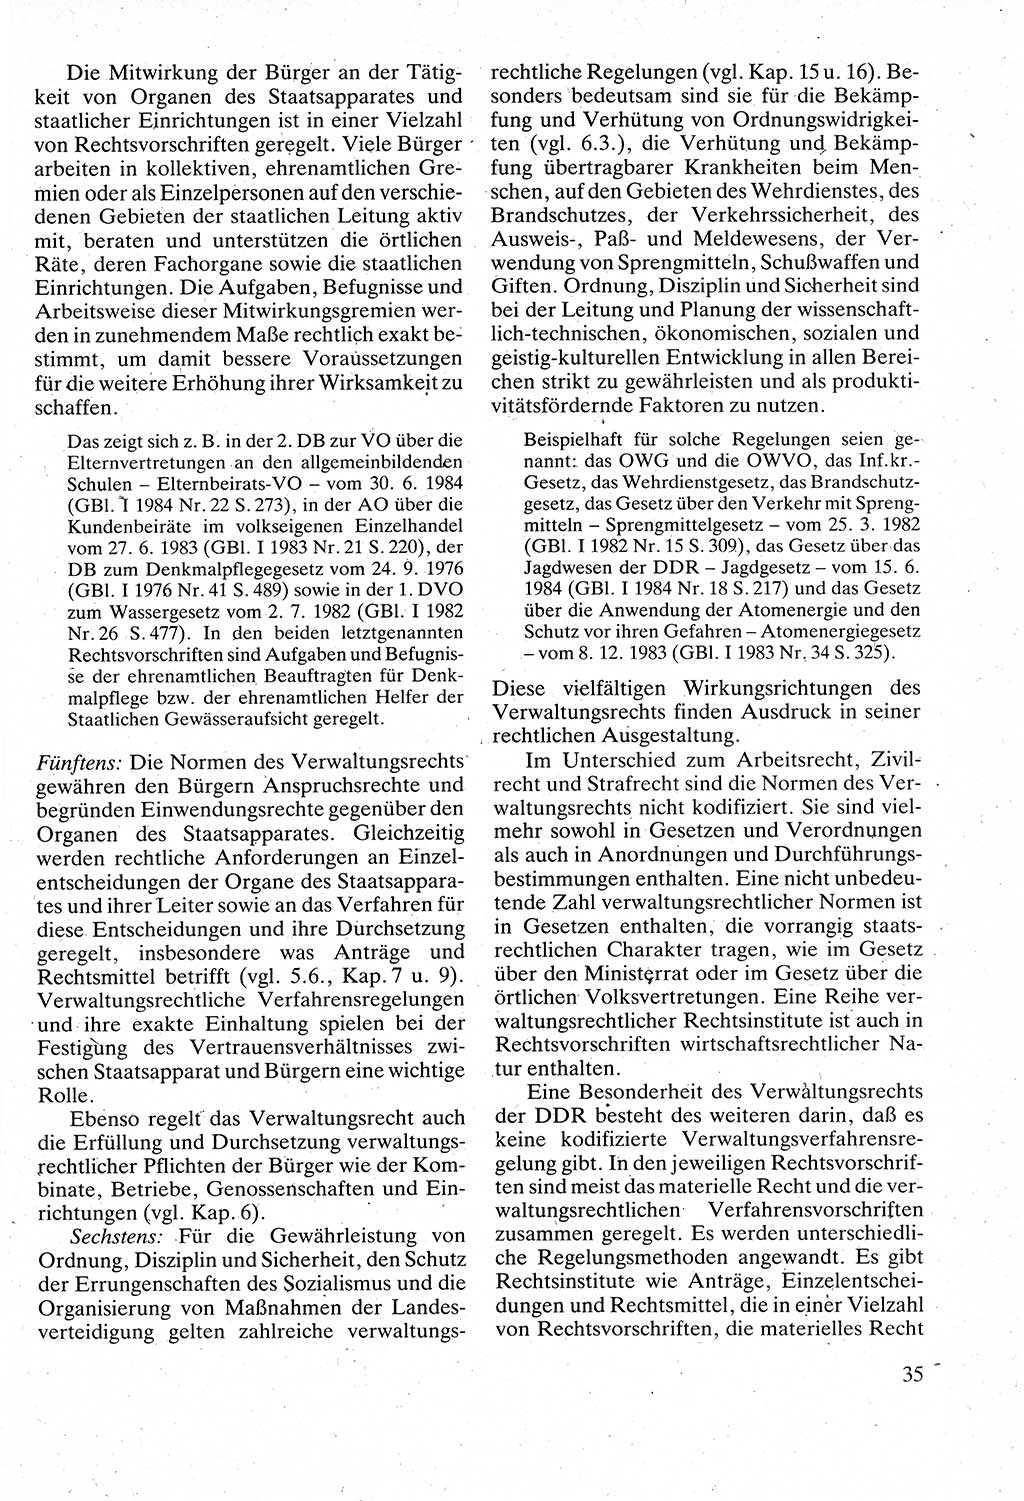 Verwaltungsrecht [Deutsche Demokratische Republik (DDR)], Lehrbuch 1988, Seite 35 (Verw.-R. DDR Lb. 1988, S. 35)